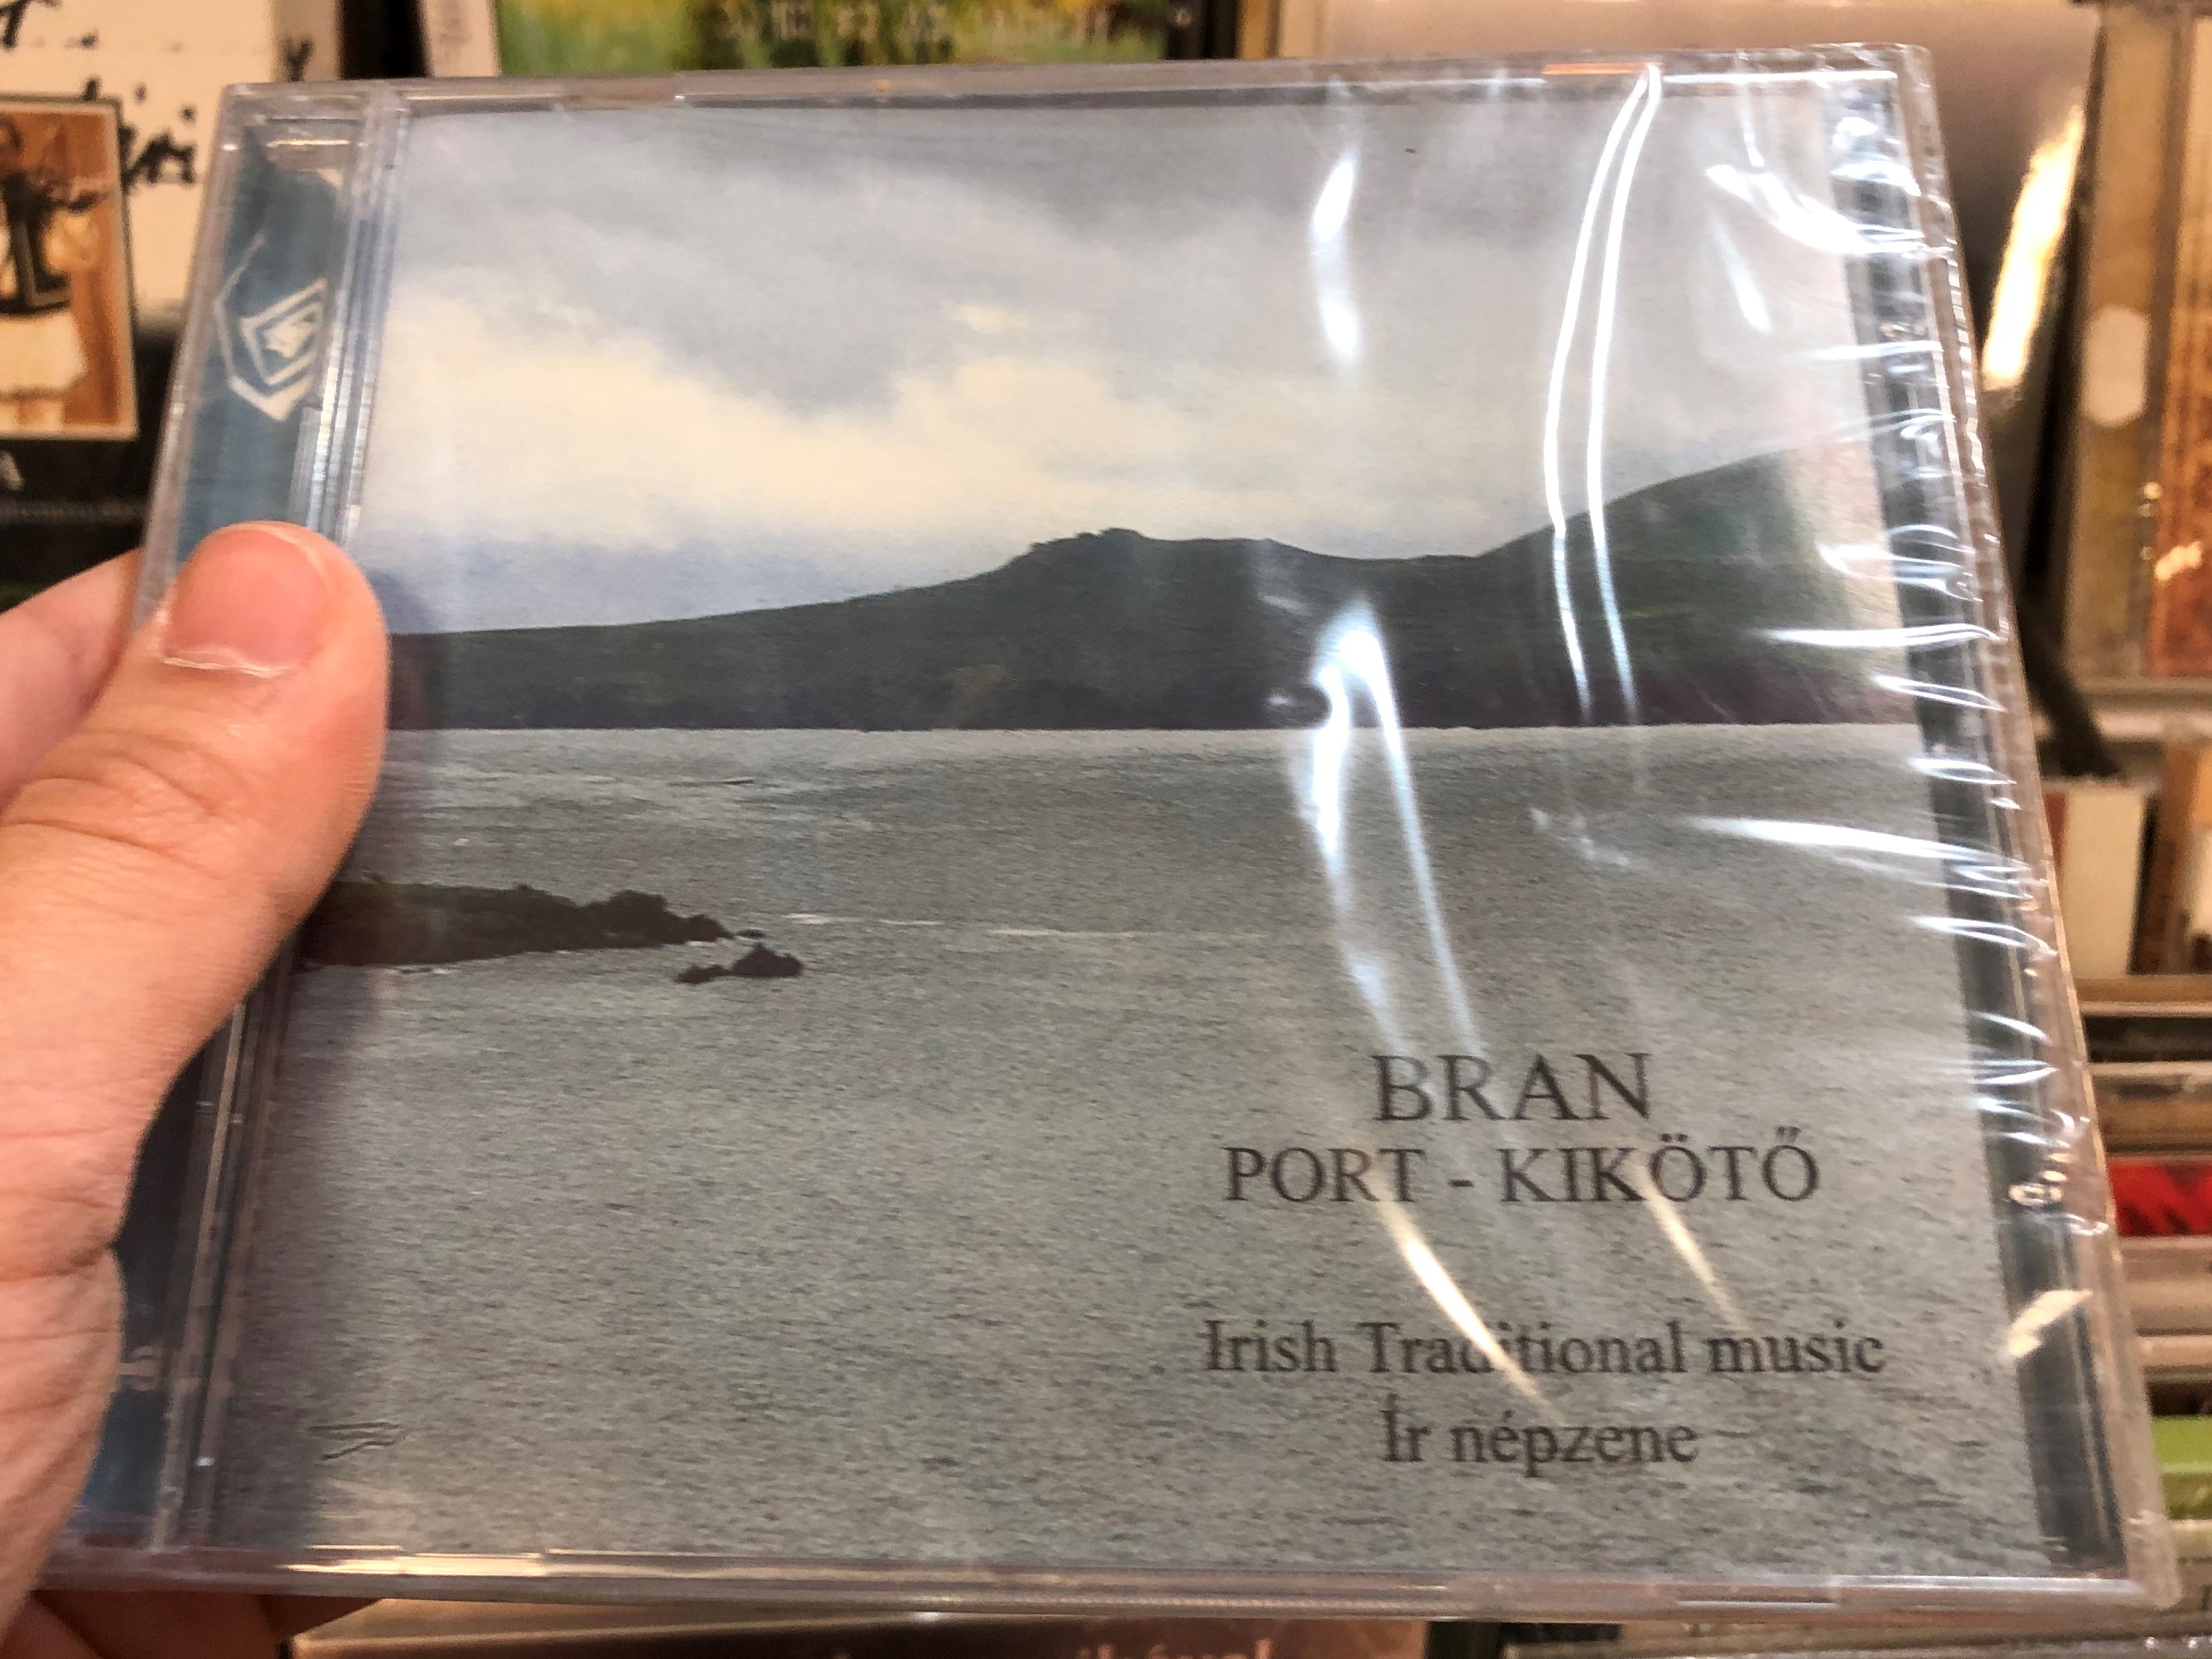 bran-port-kik-t-irish-traditional-music-ir-nepzene-fon-records-audio-cd-1996-fa-016-2-1-.jpg